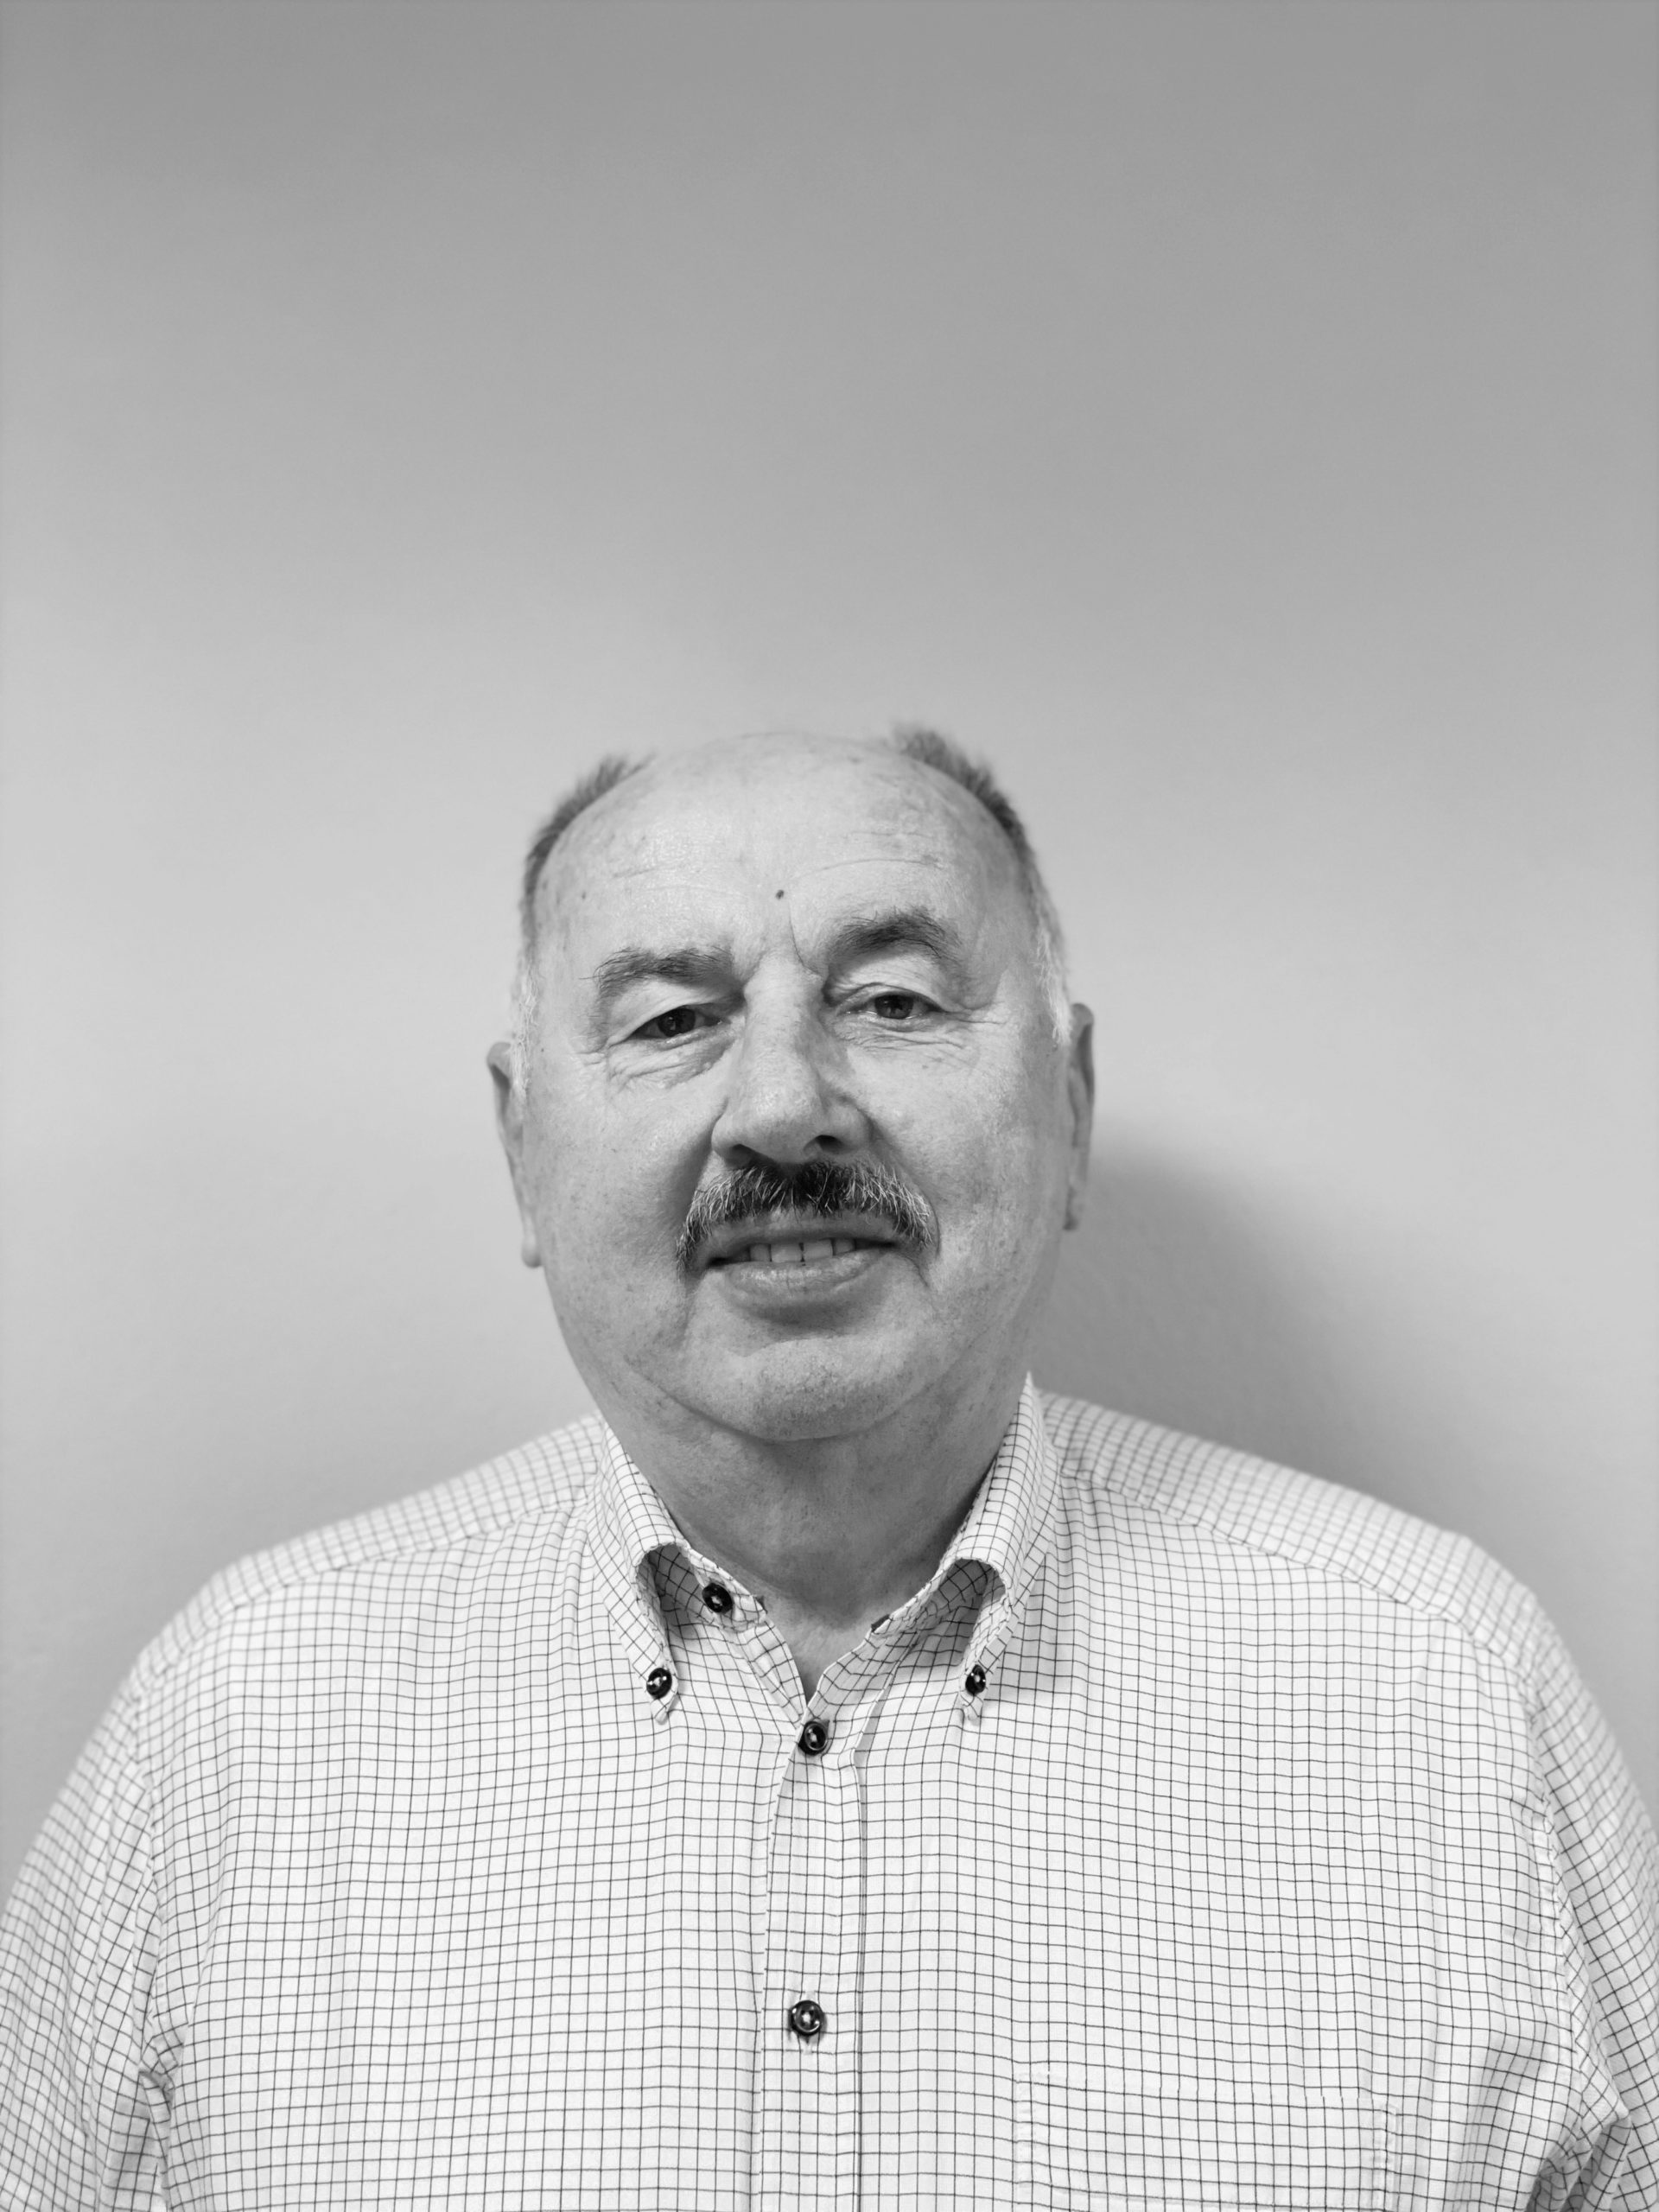 Peter Kukučka bezpečnostný technik, technik požiarnej ochrany a odborník v oblasti civilnej ochrany fotografia pre BIO zamestnanca.